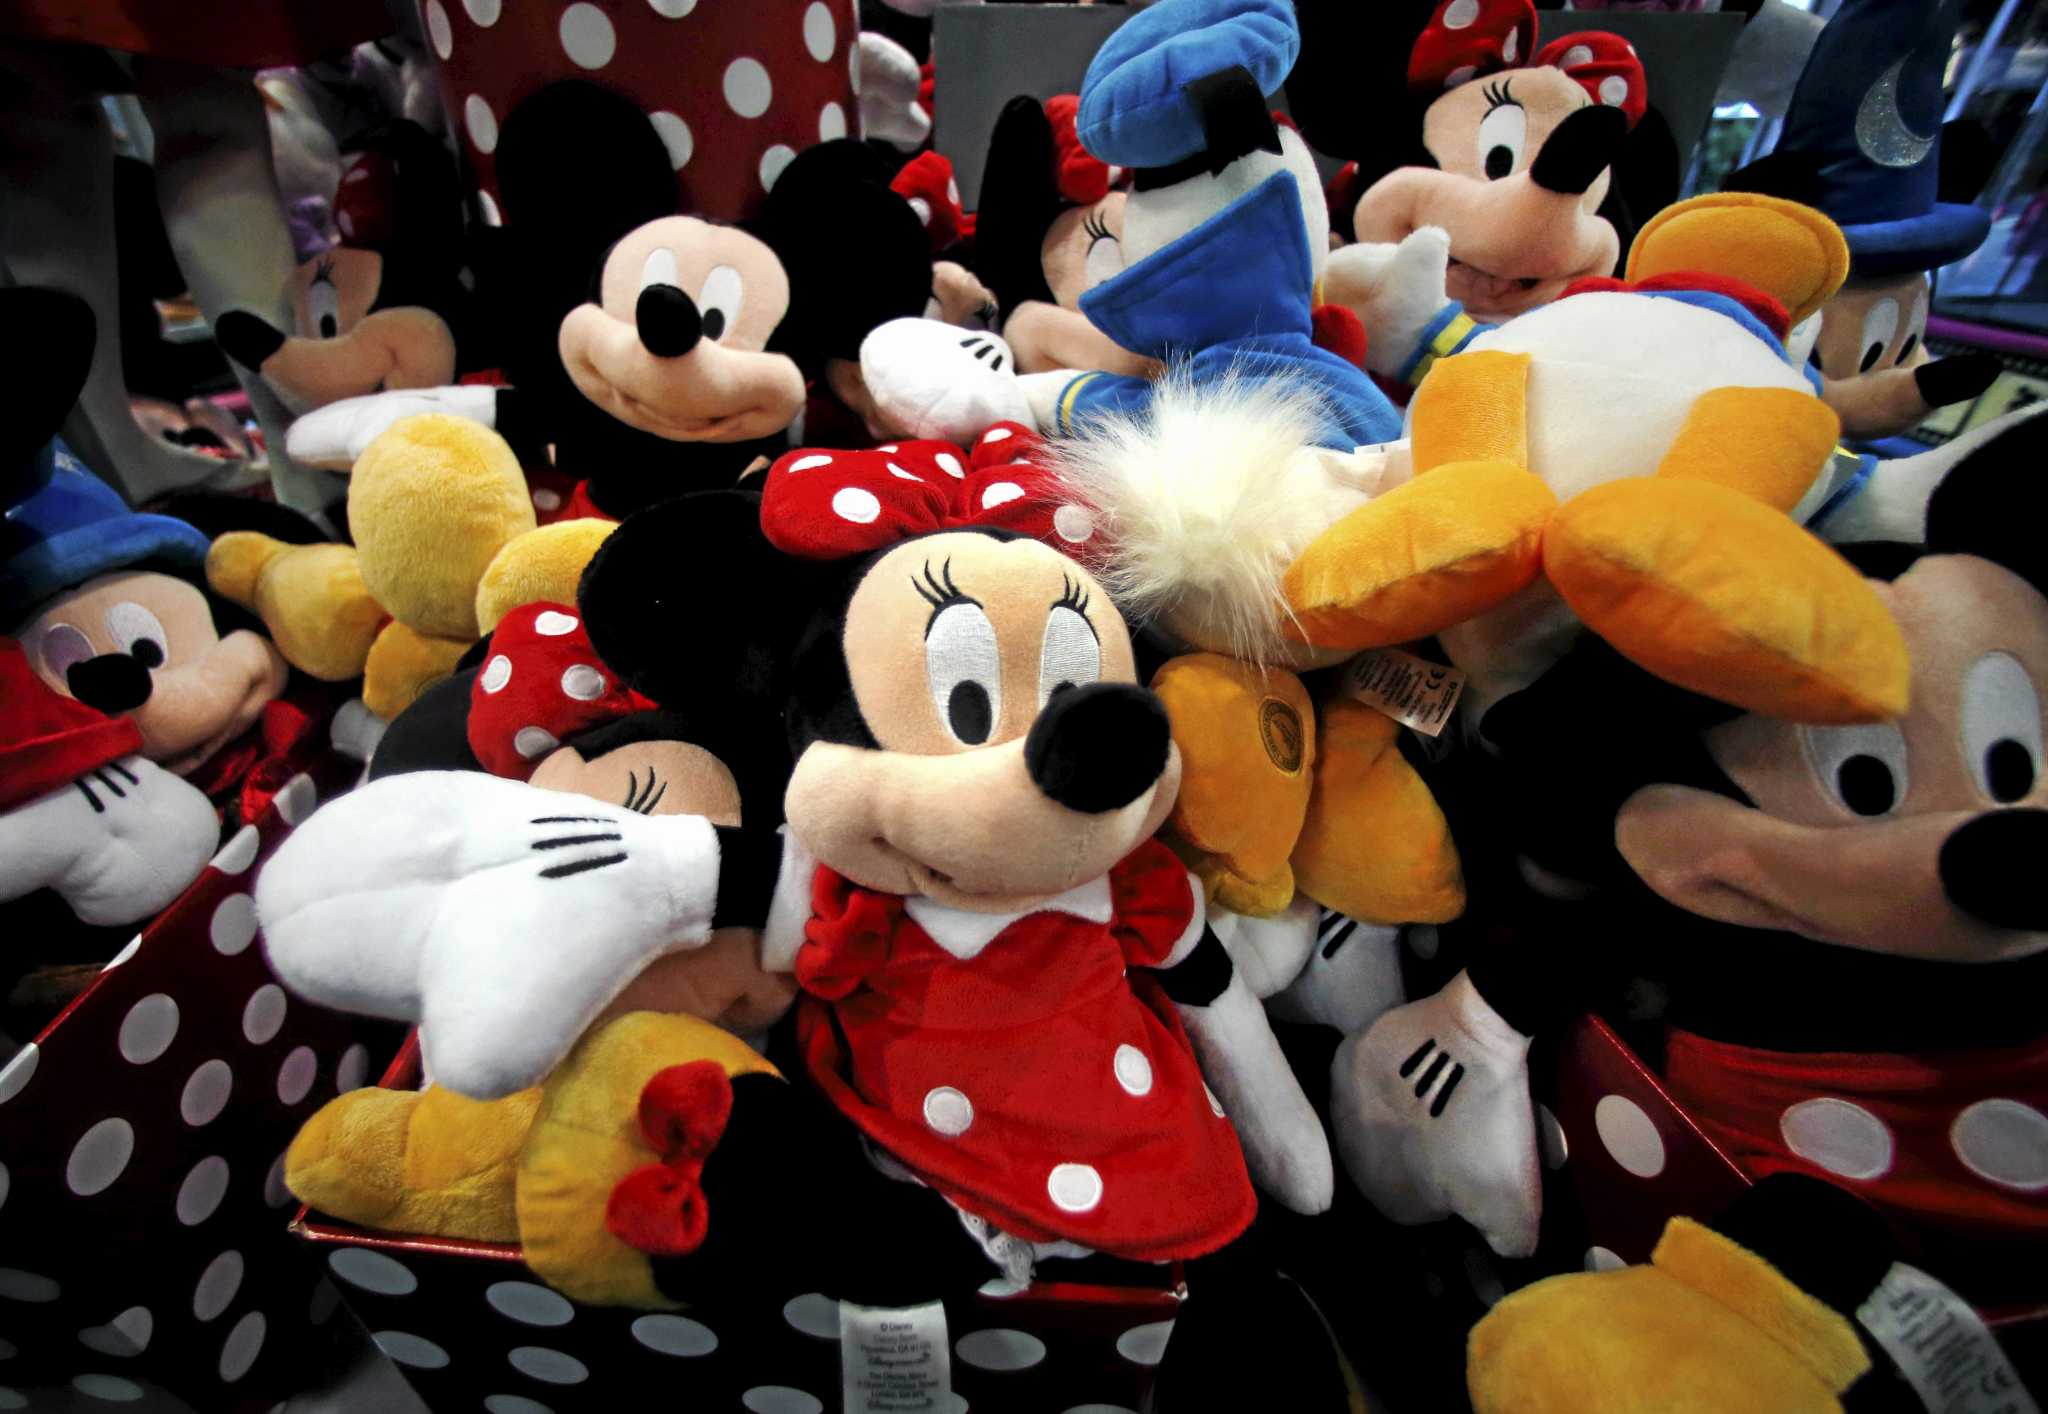 Disney 2nd quarter earnings beat Street, helped by ‘Frozen’